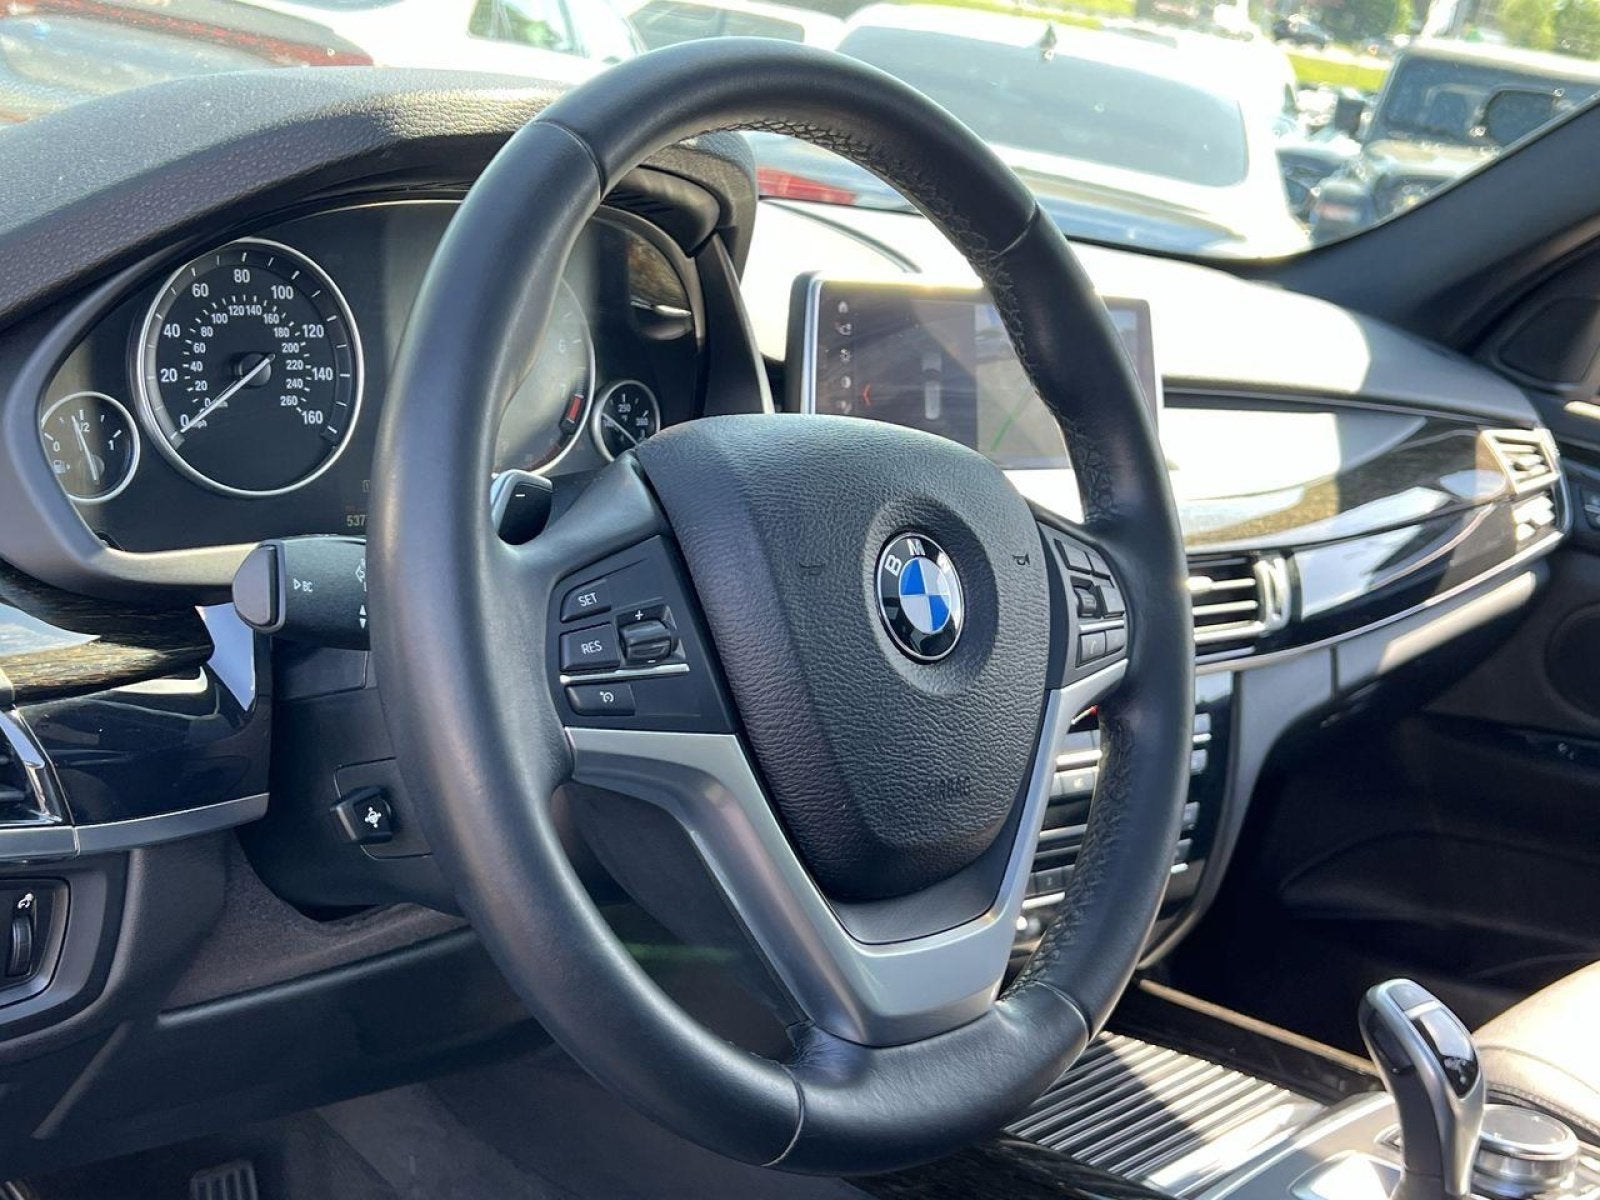 2018 BMW X5 sDrive35i